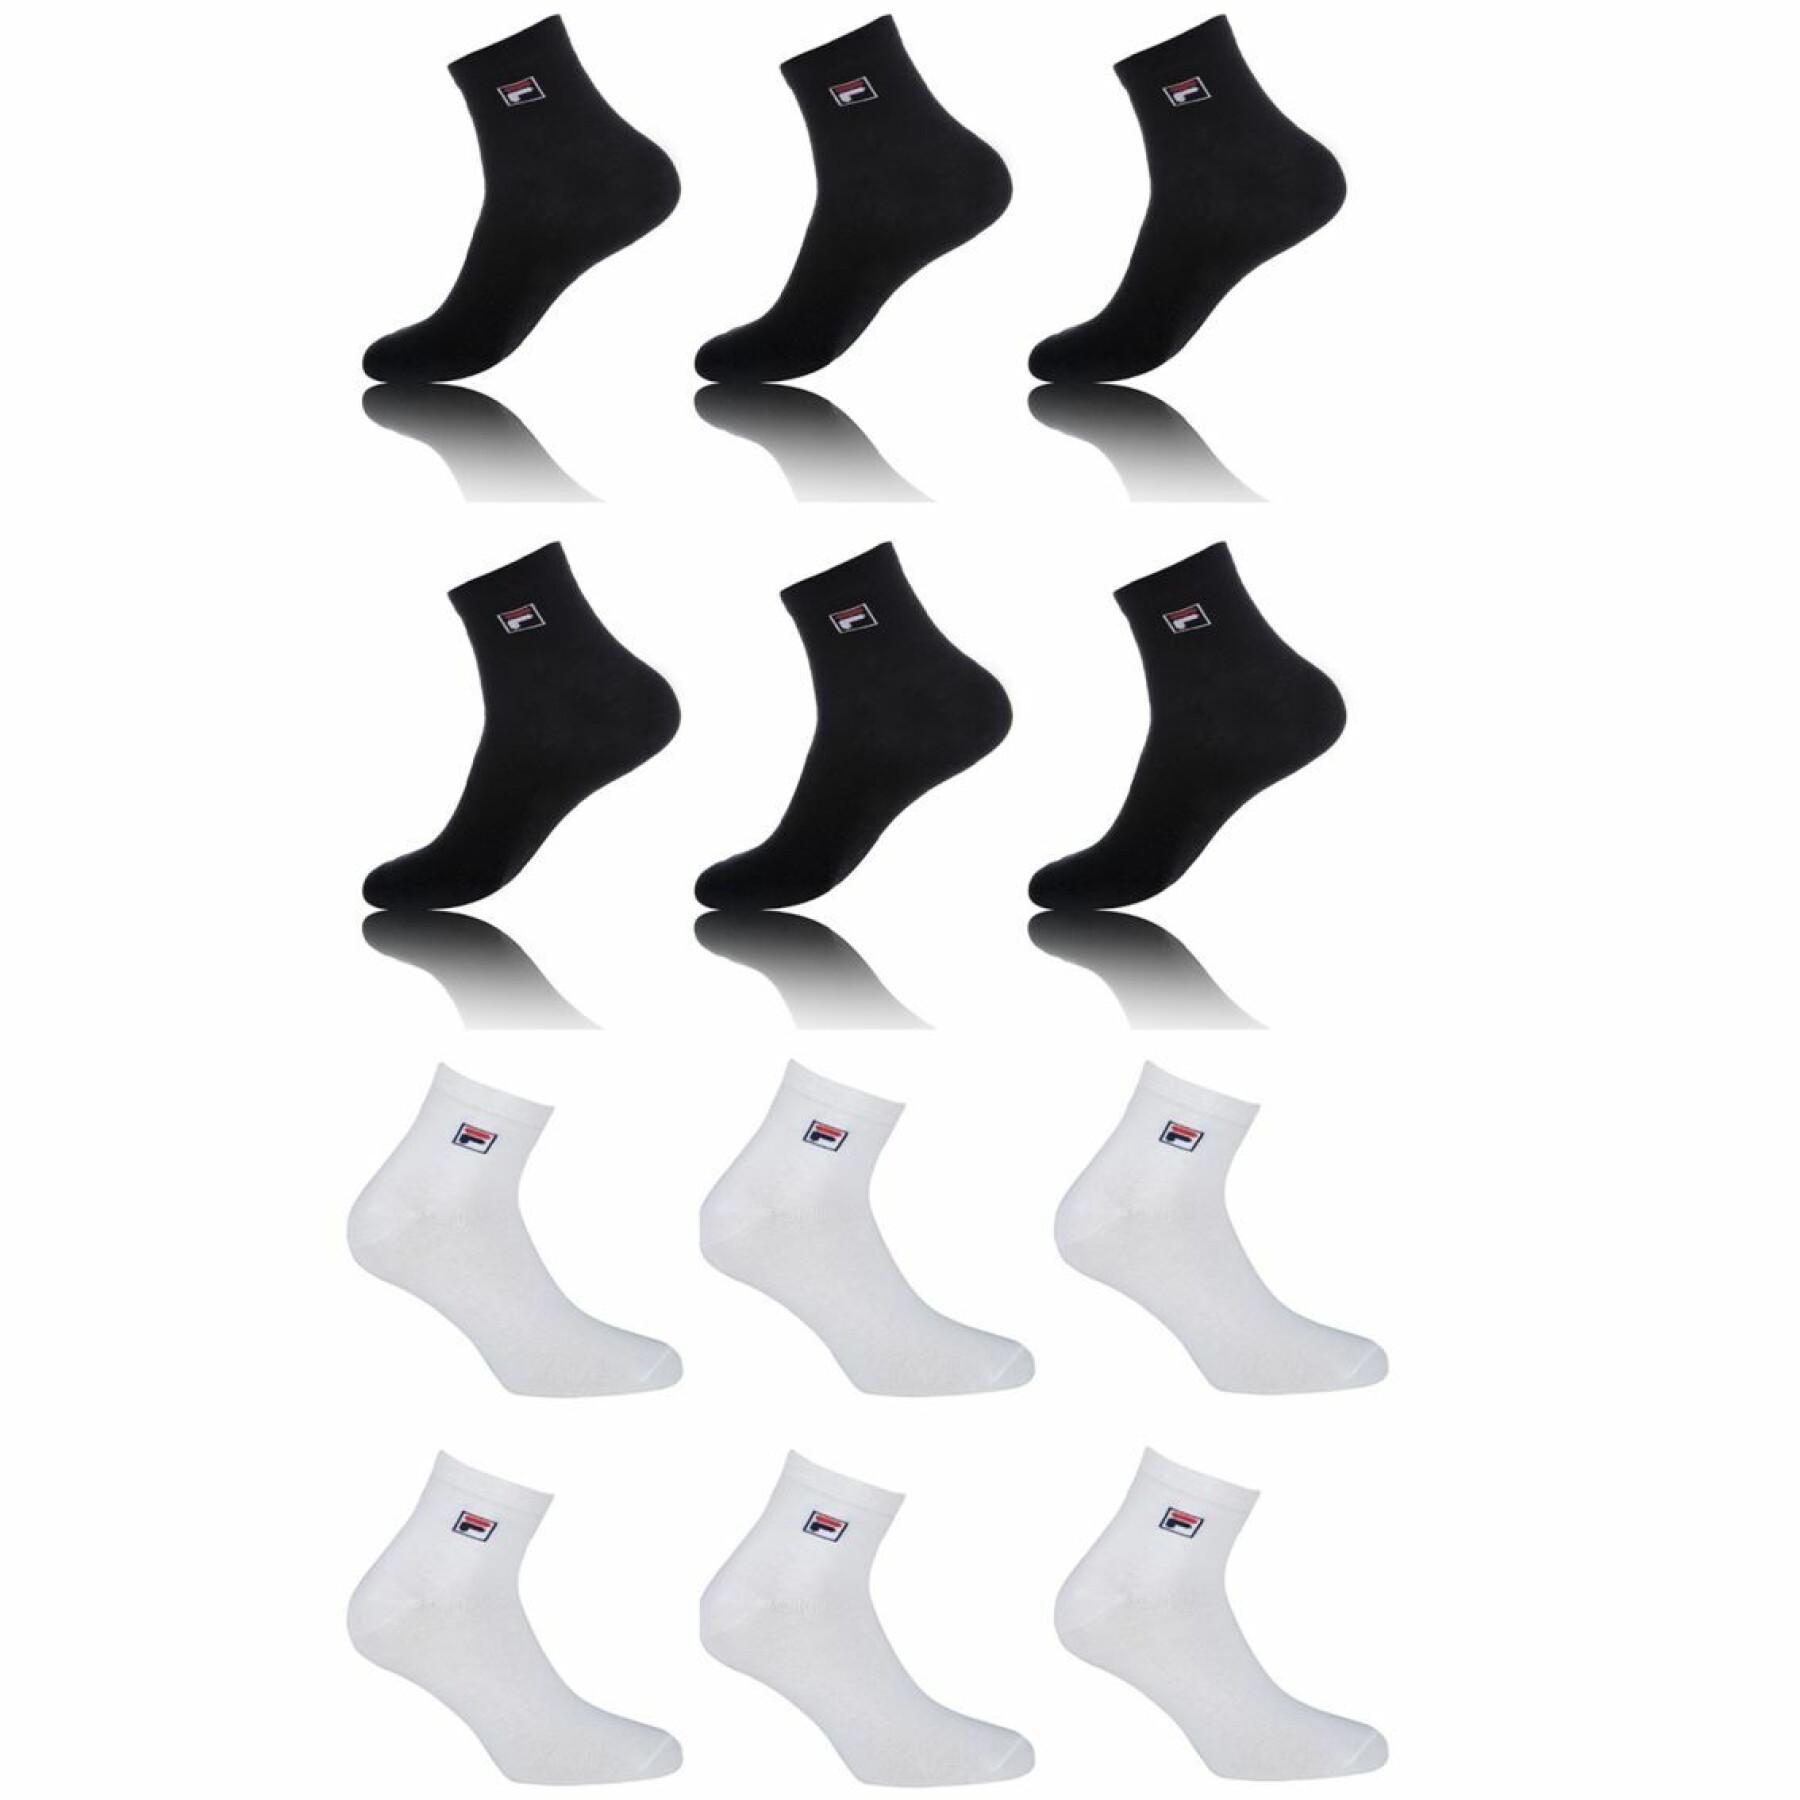 Paquete de 12 pares de calcetines de cuarto modelo 9303 Fila